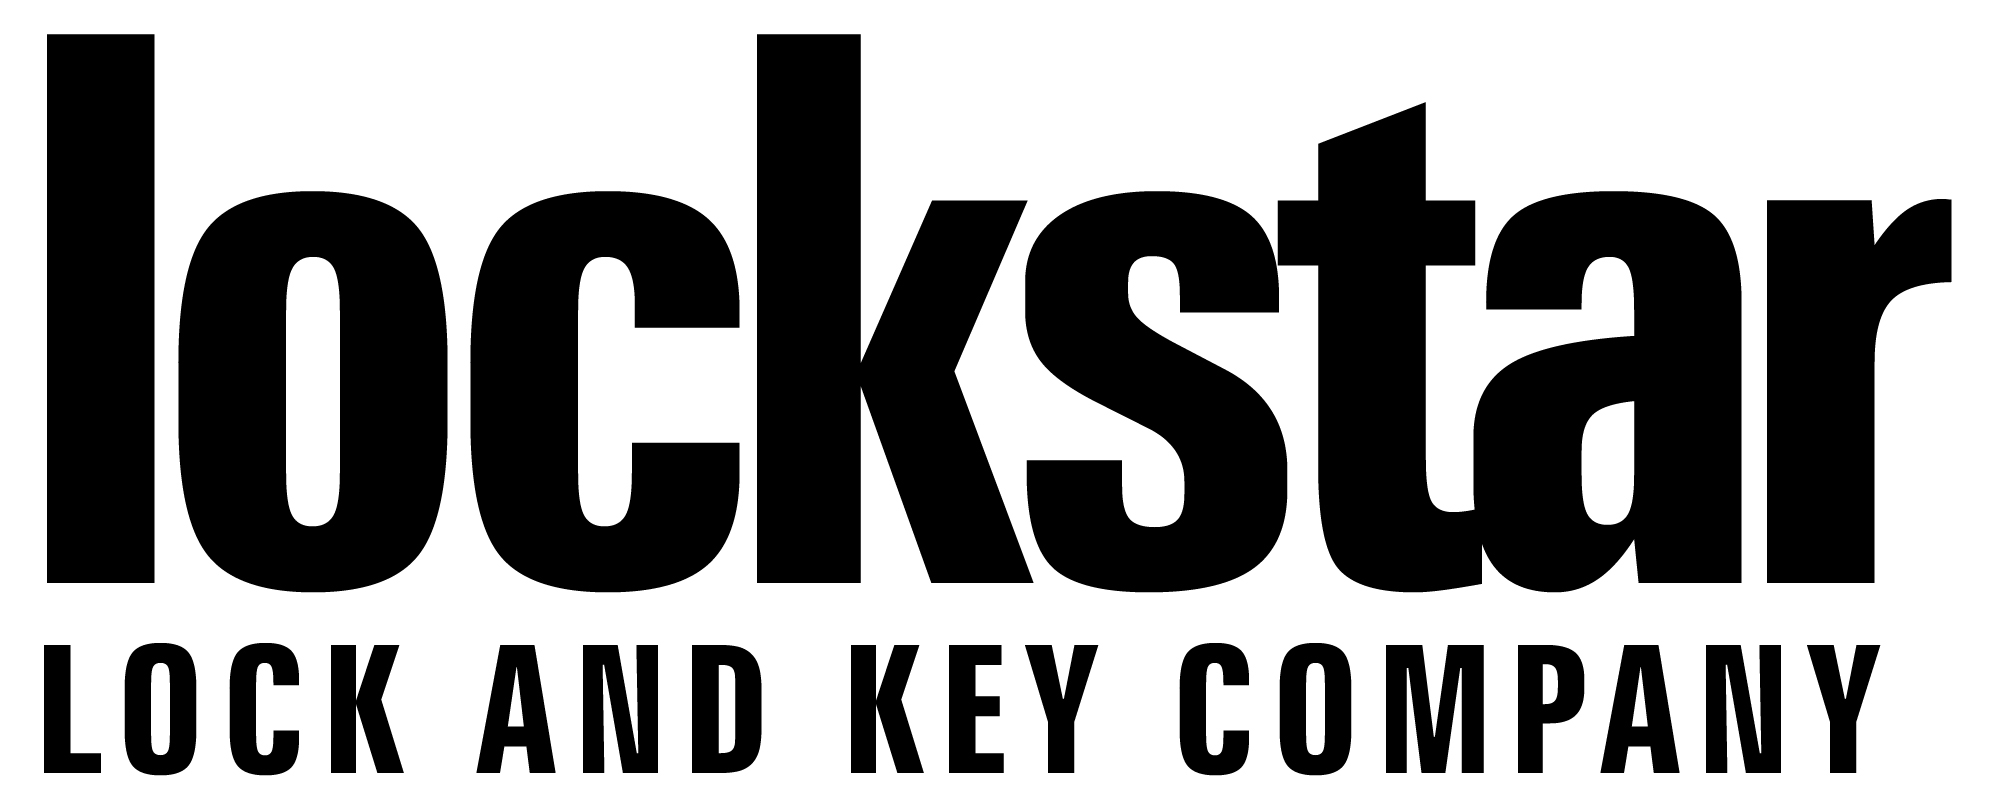 logo for Lockstar Lock and Key Company